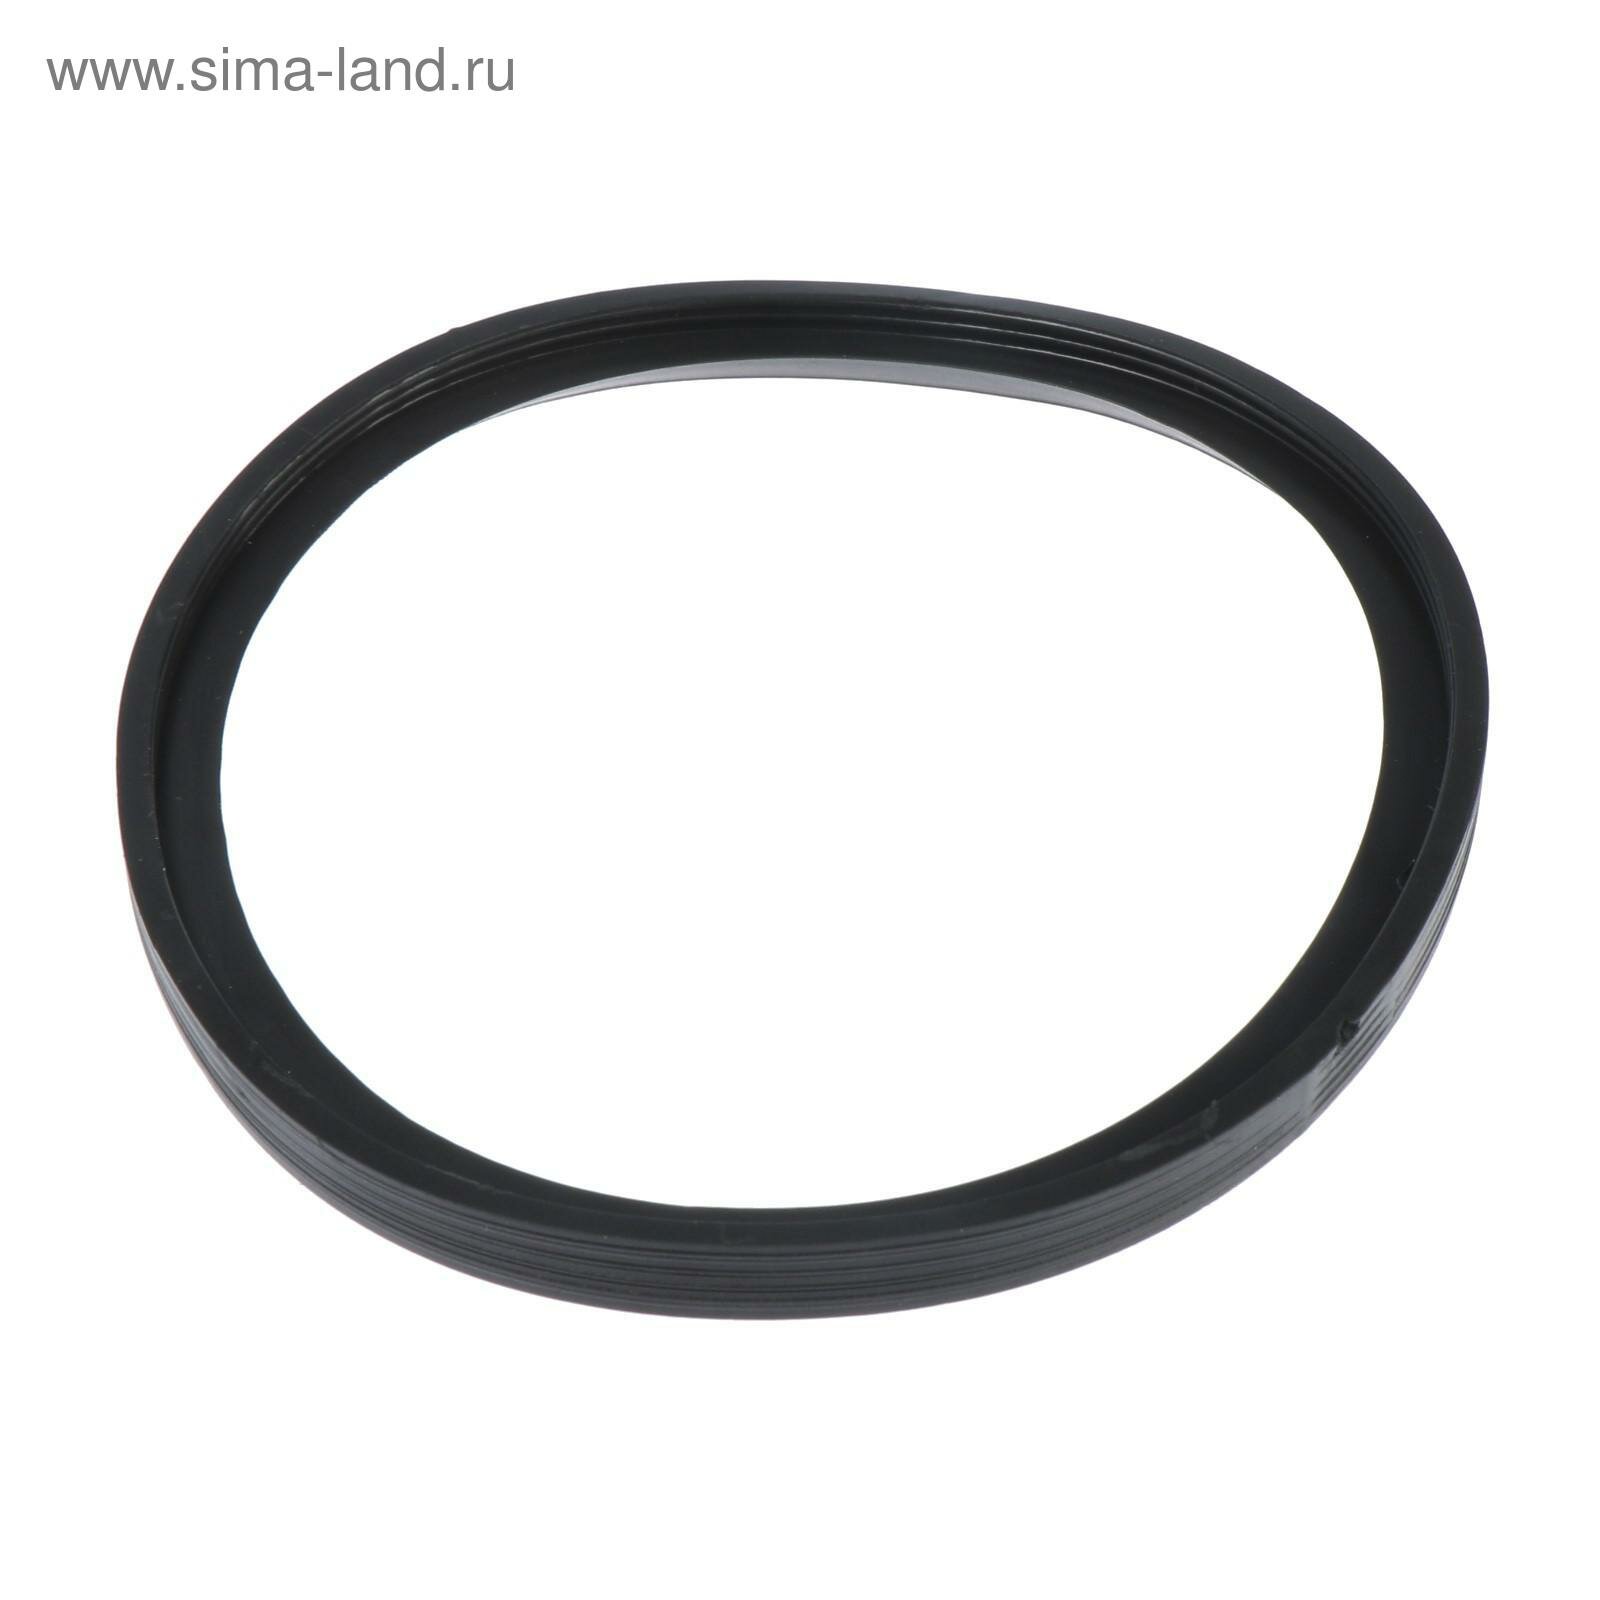 Кольцо для канализационных труб ИС.130223 d=110 мм